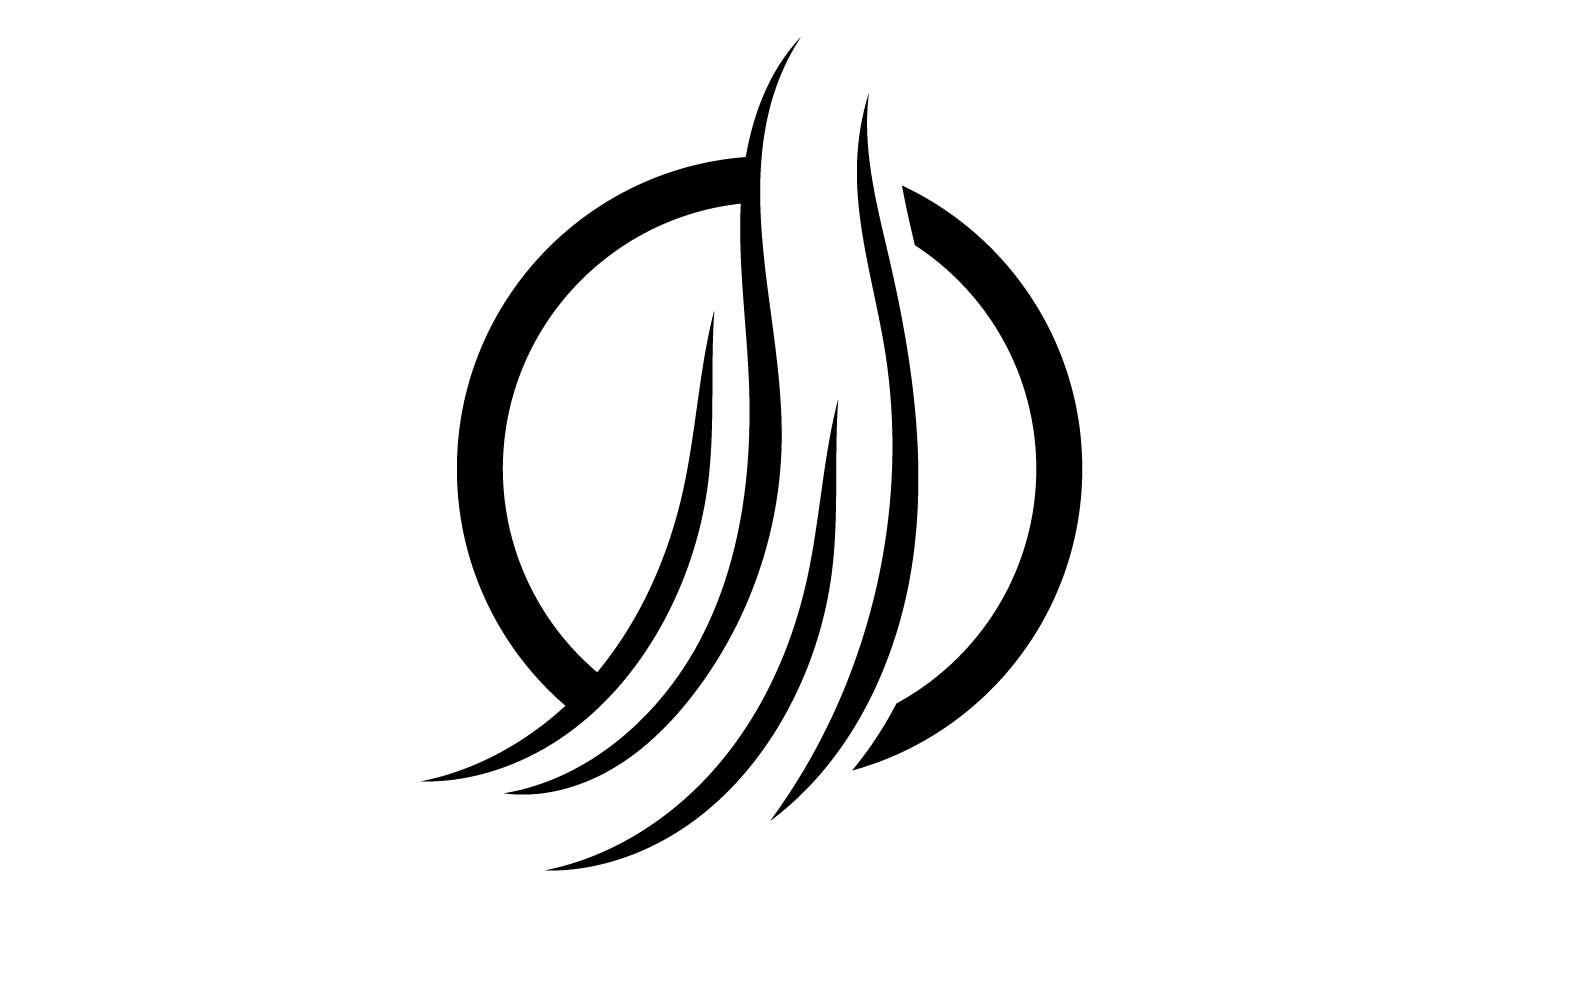 Hair line wave design  logo and symbol vector v26